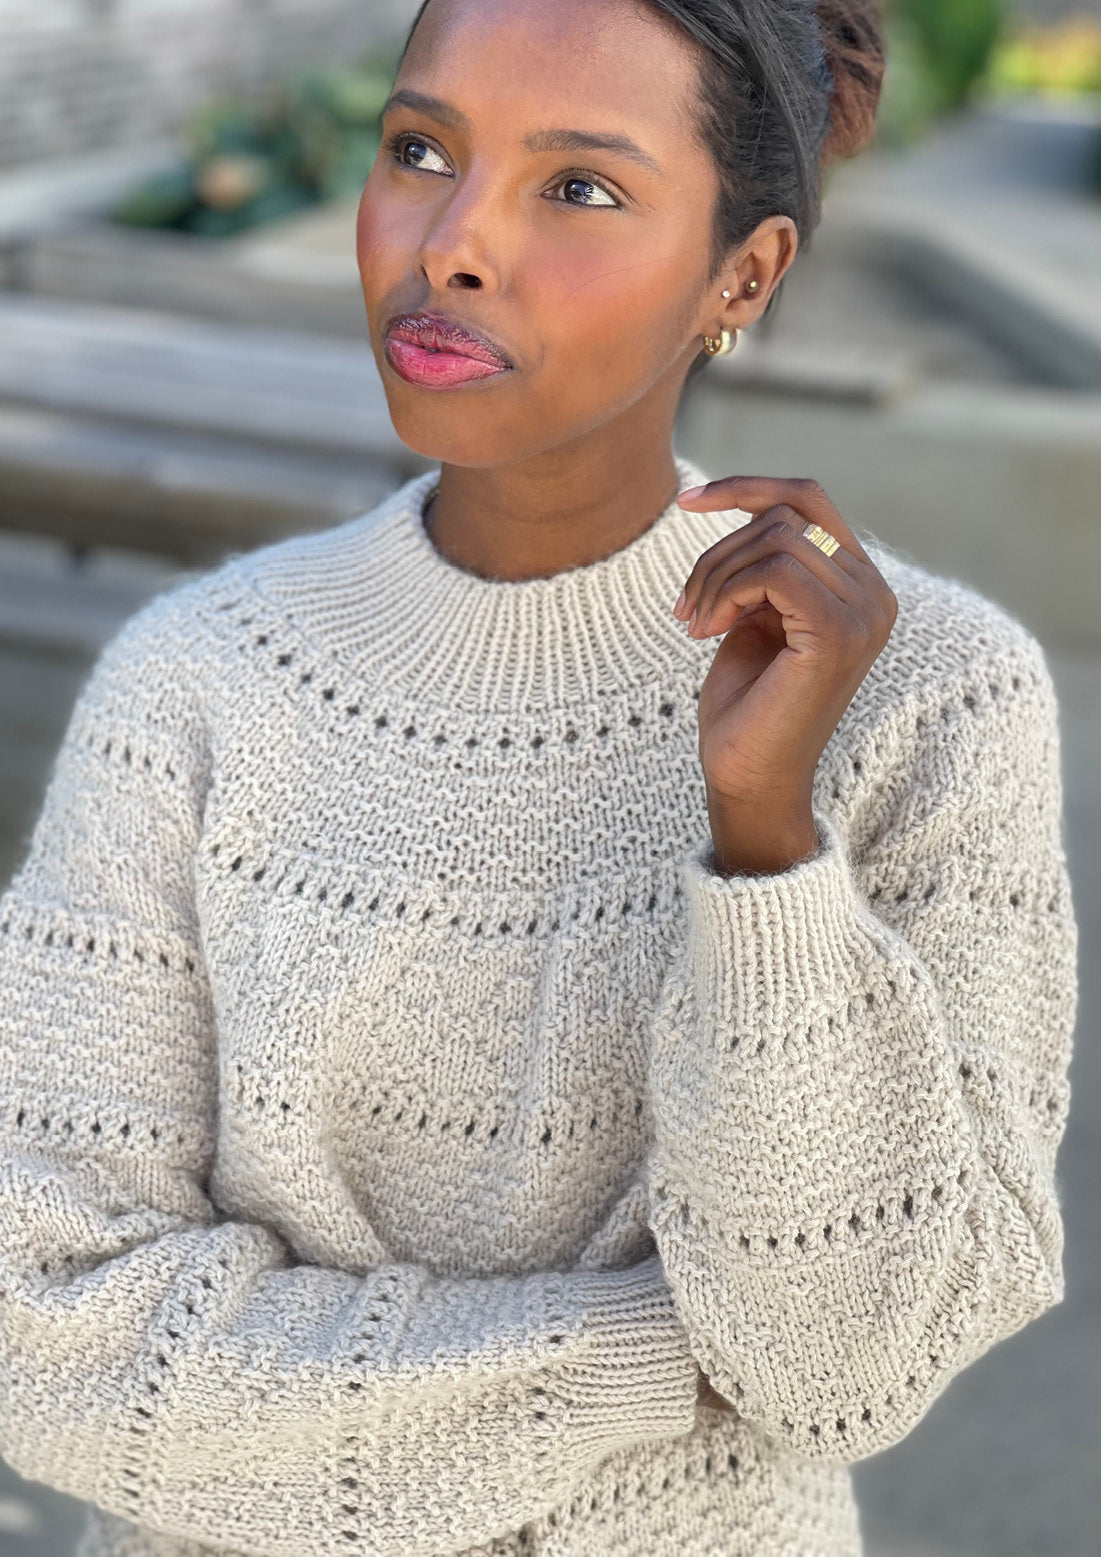 Women's Knit Sweater SIENNA Black